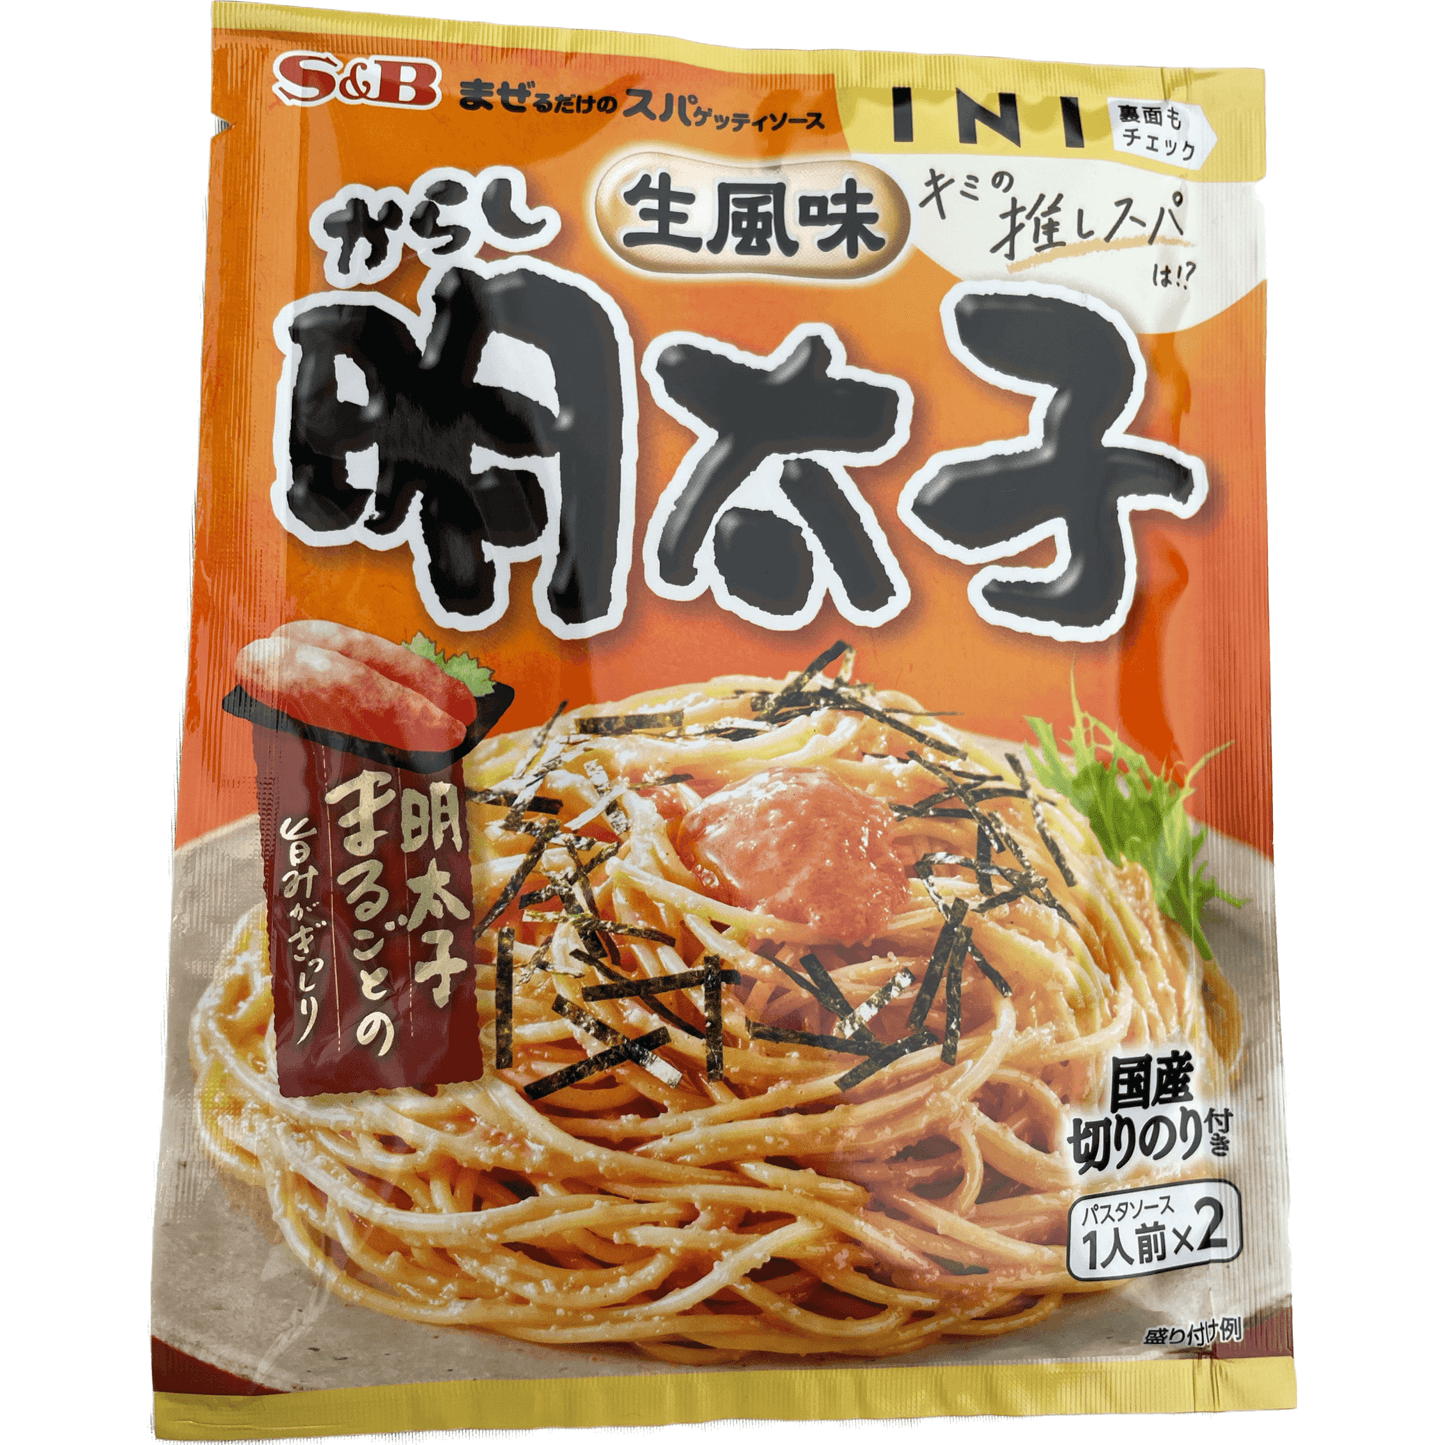 S&B Mentaiko Pasta Sauce Ｓ＆Ｂ　生風味明太子　パスタソース - RiceWineShop